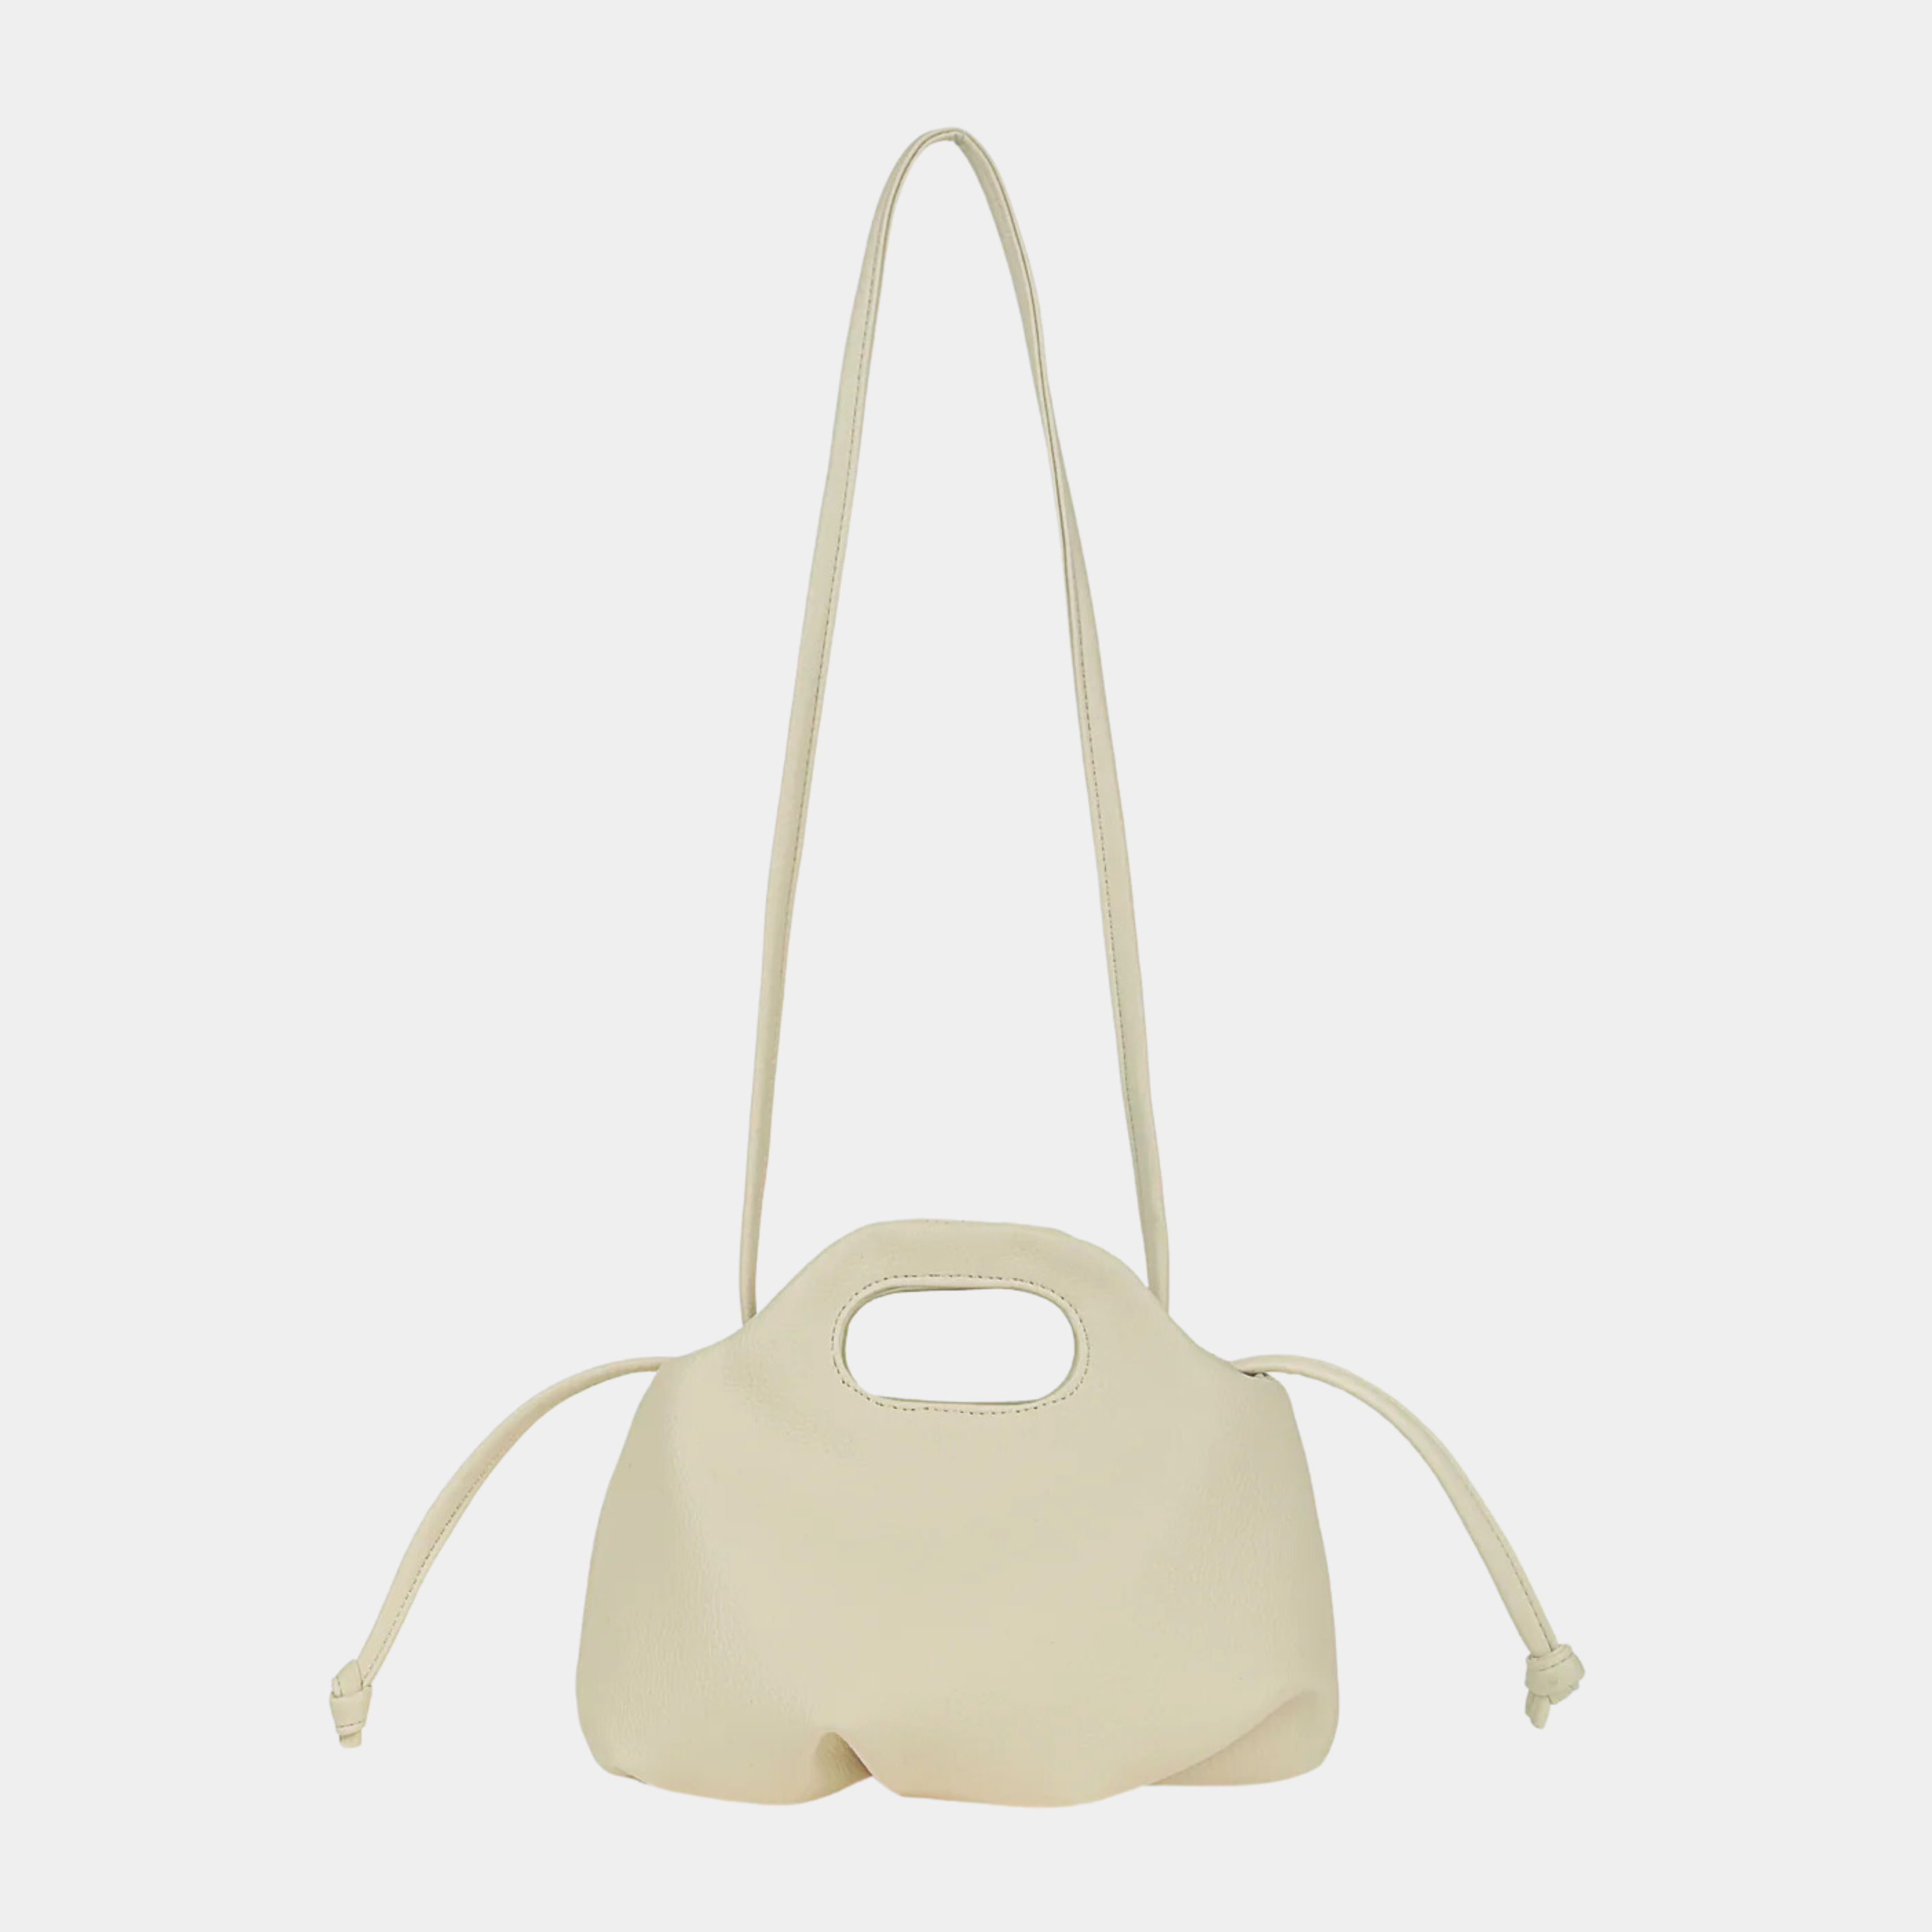 Flower Mini Handbag in creamy white color